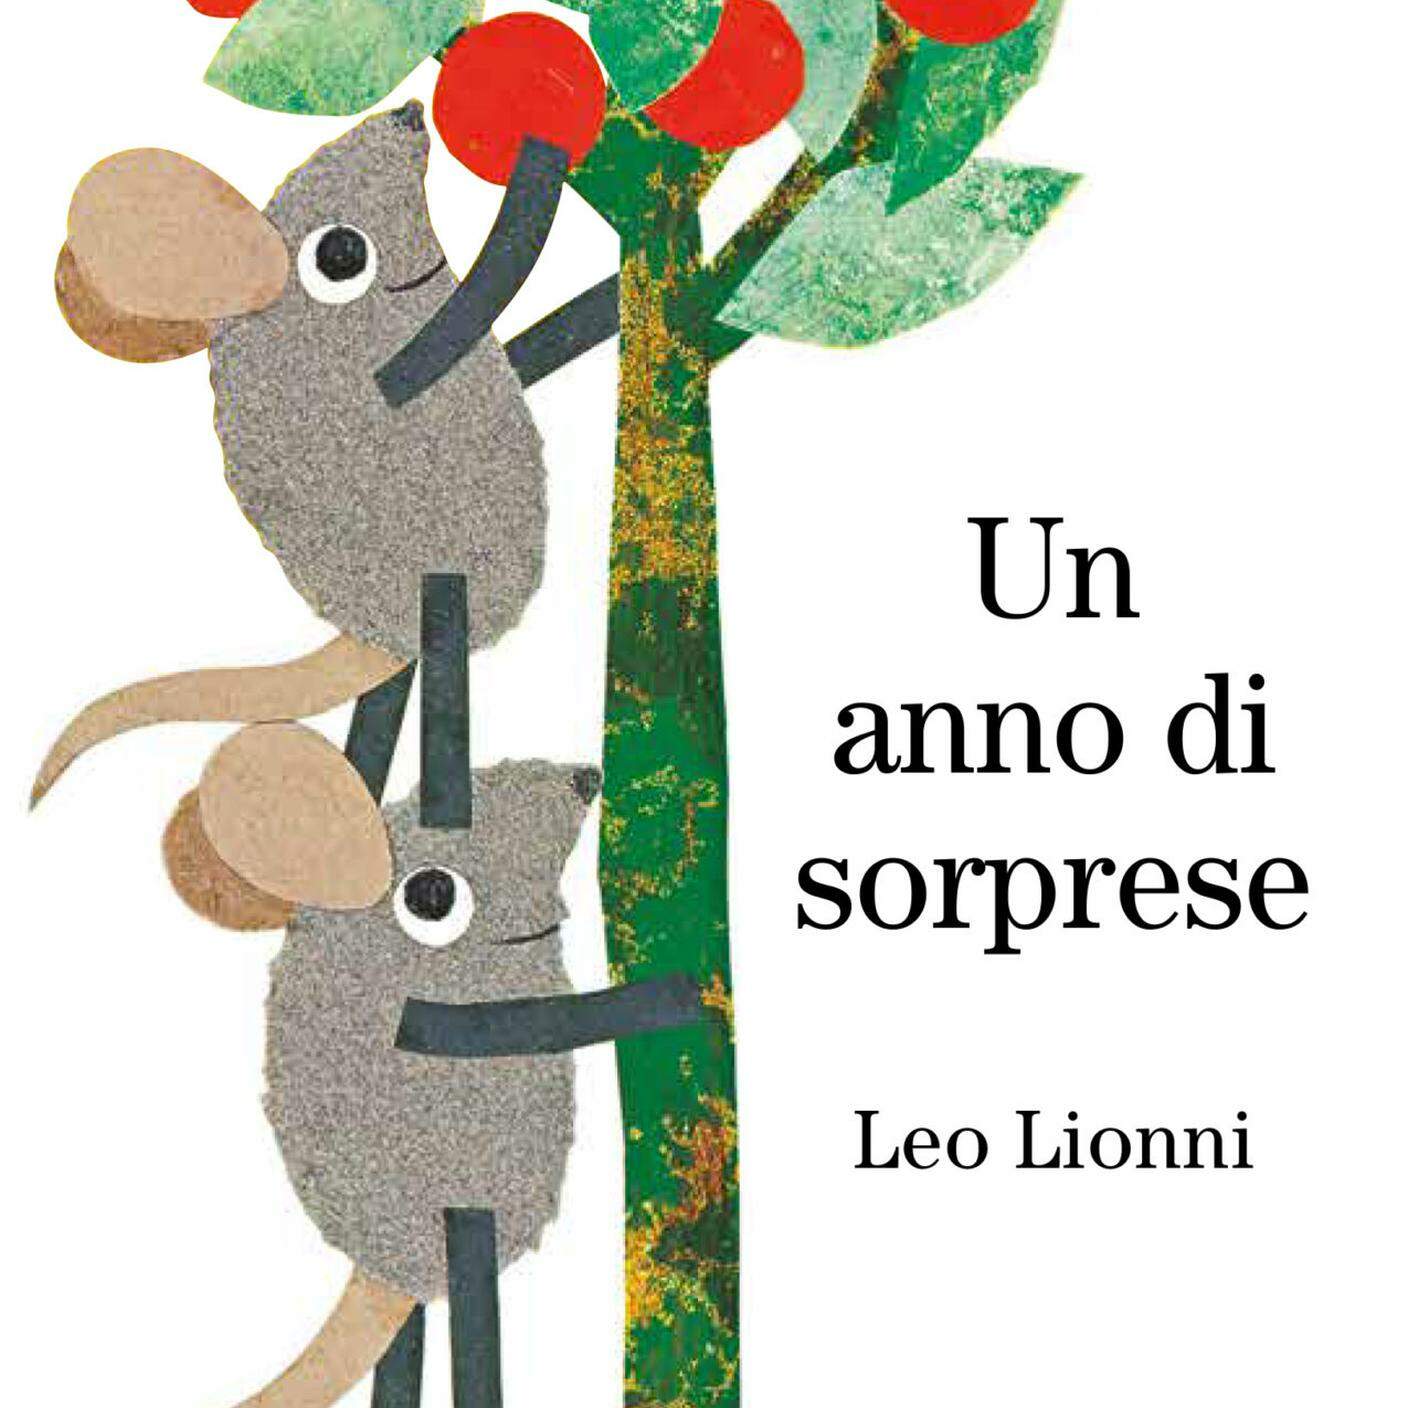 Leo Lionni, “Un anno di sorprese”, Edizioni Babalibri (dettaglio copertina)